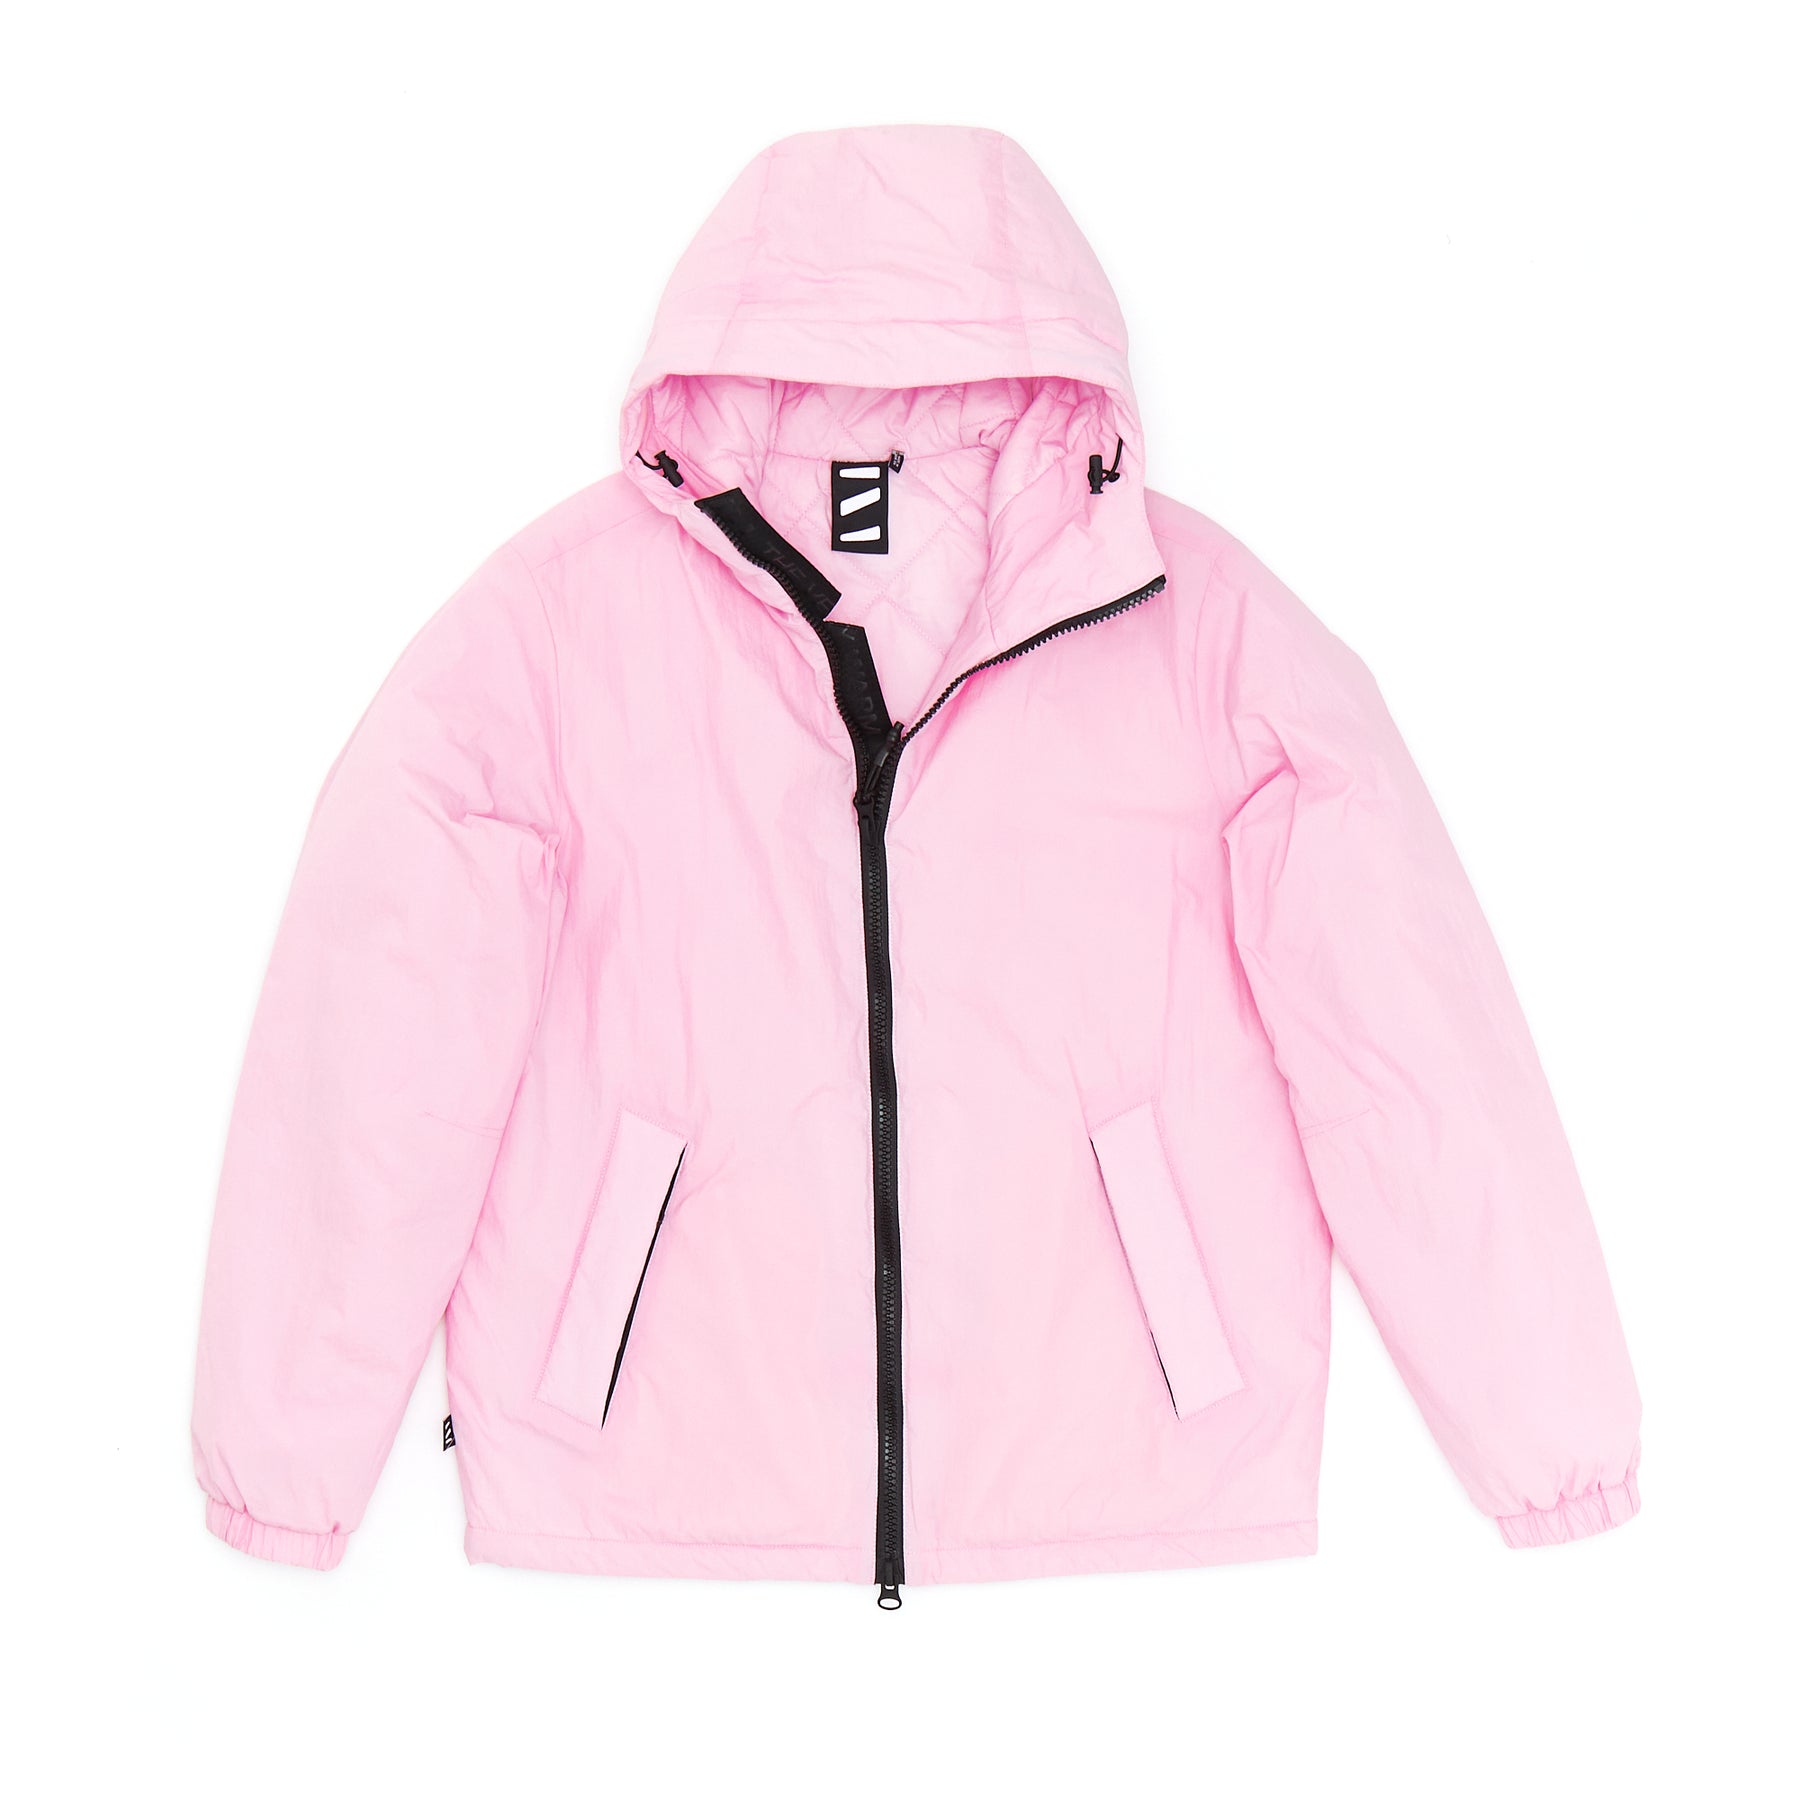 Unisex Light Hooded Jacket - Pink Slate